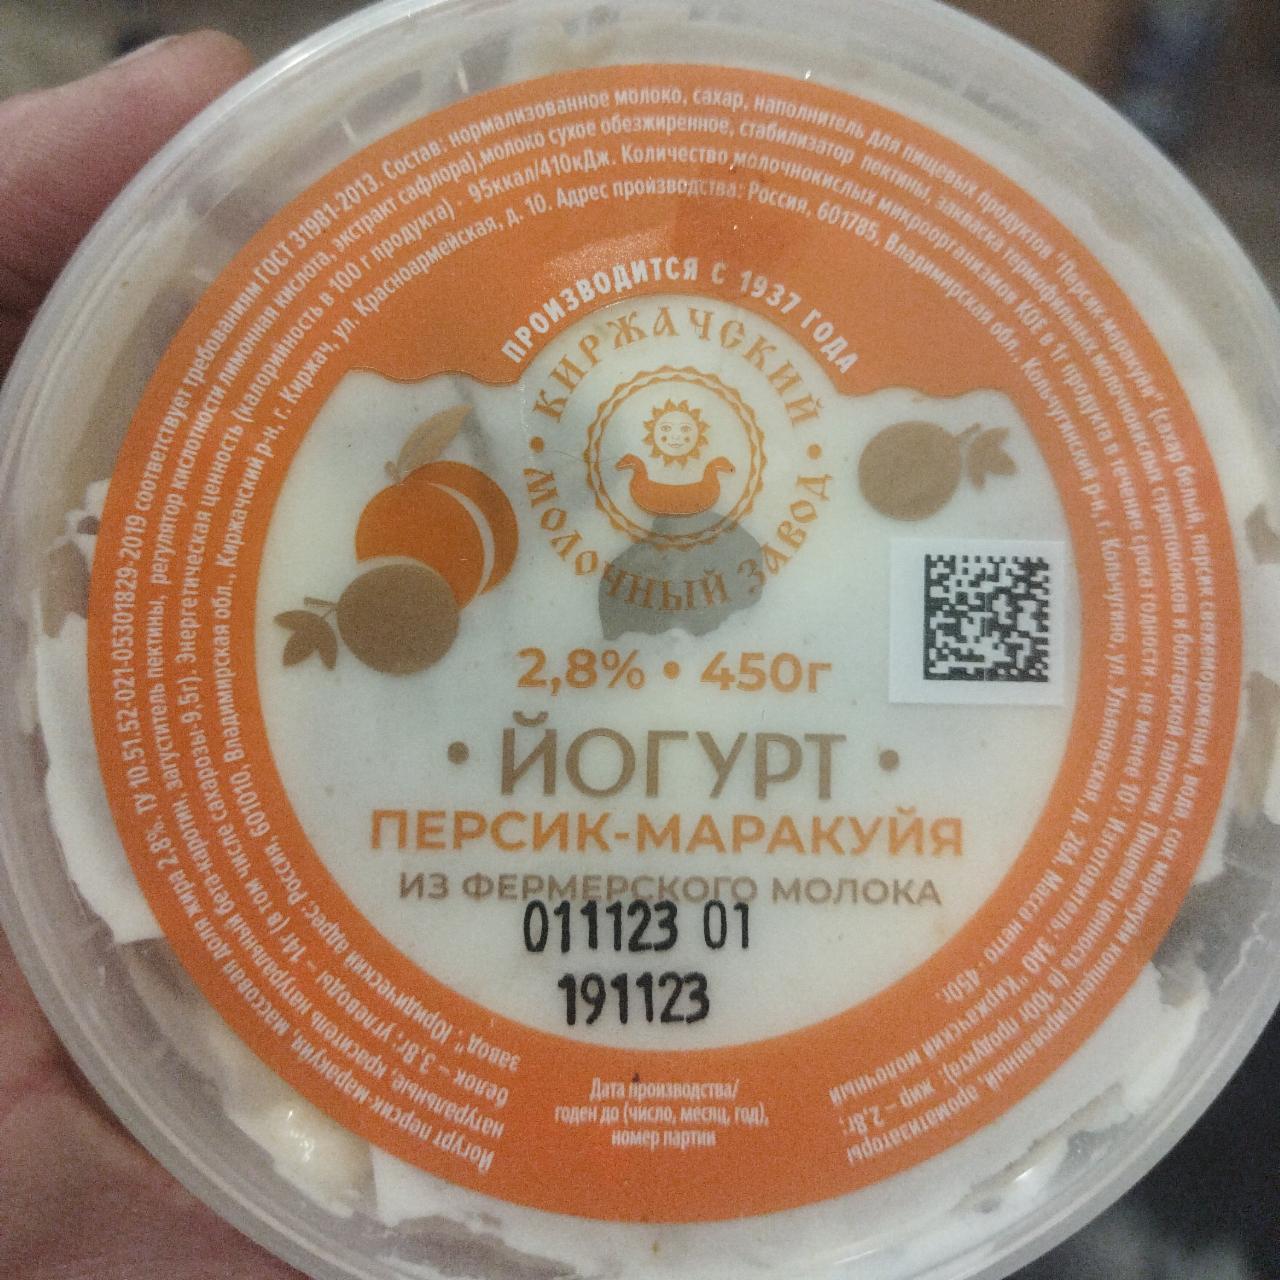 Фото - Йогурт персик-маракуйа Киржачский молочный завод 2,8% Киржачский молочный завод